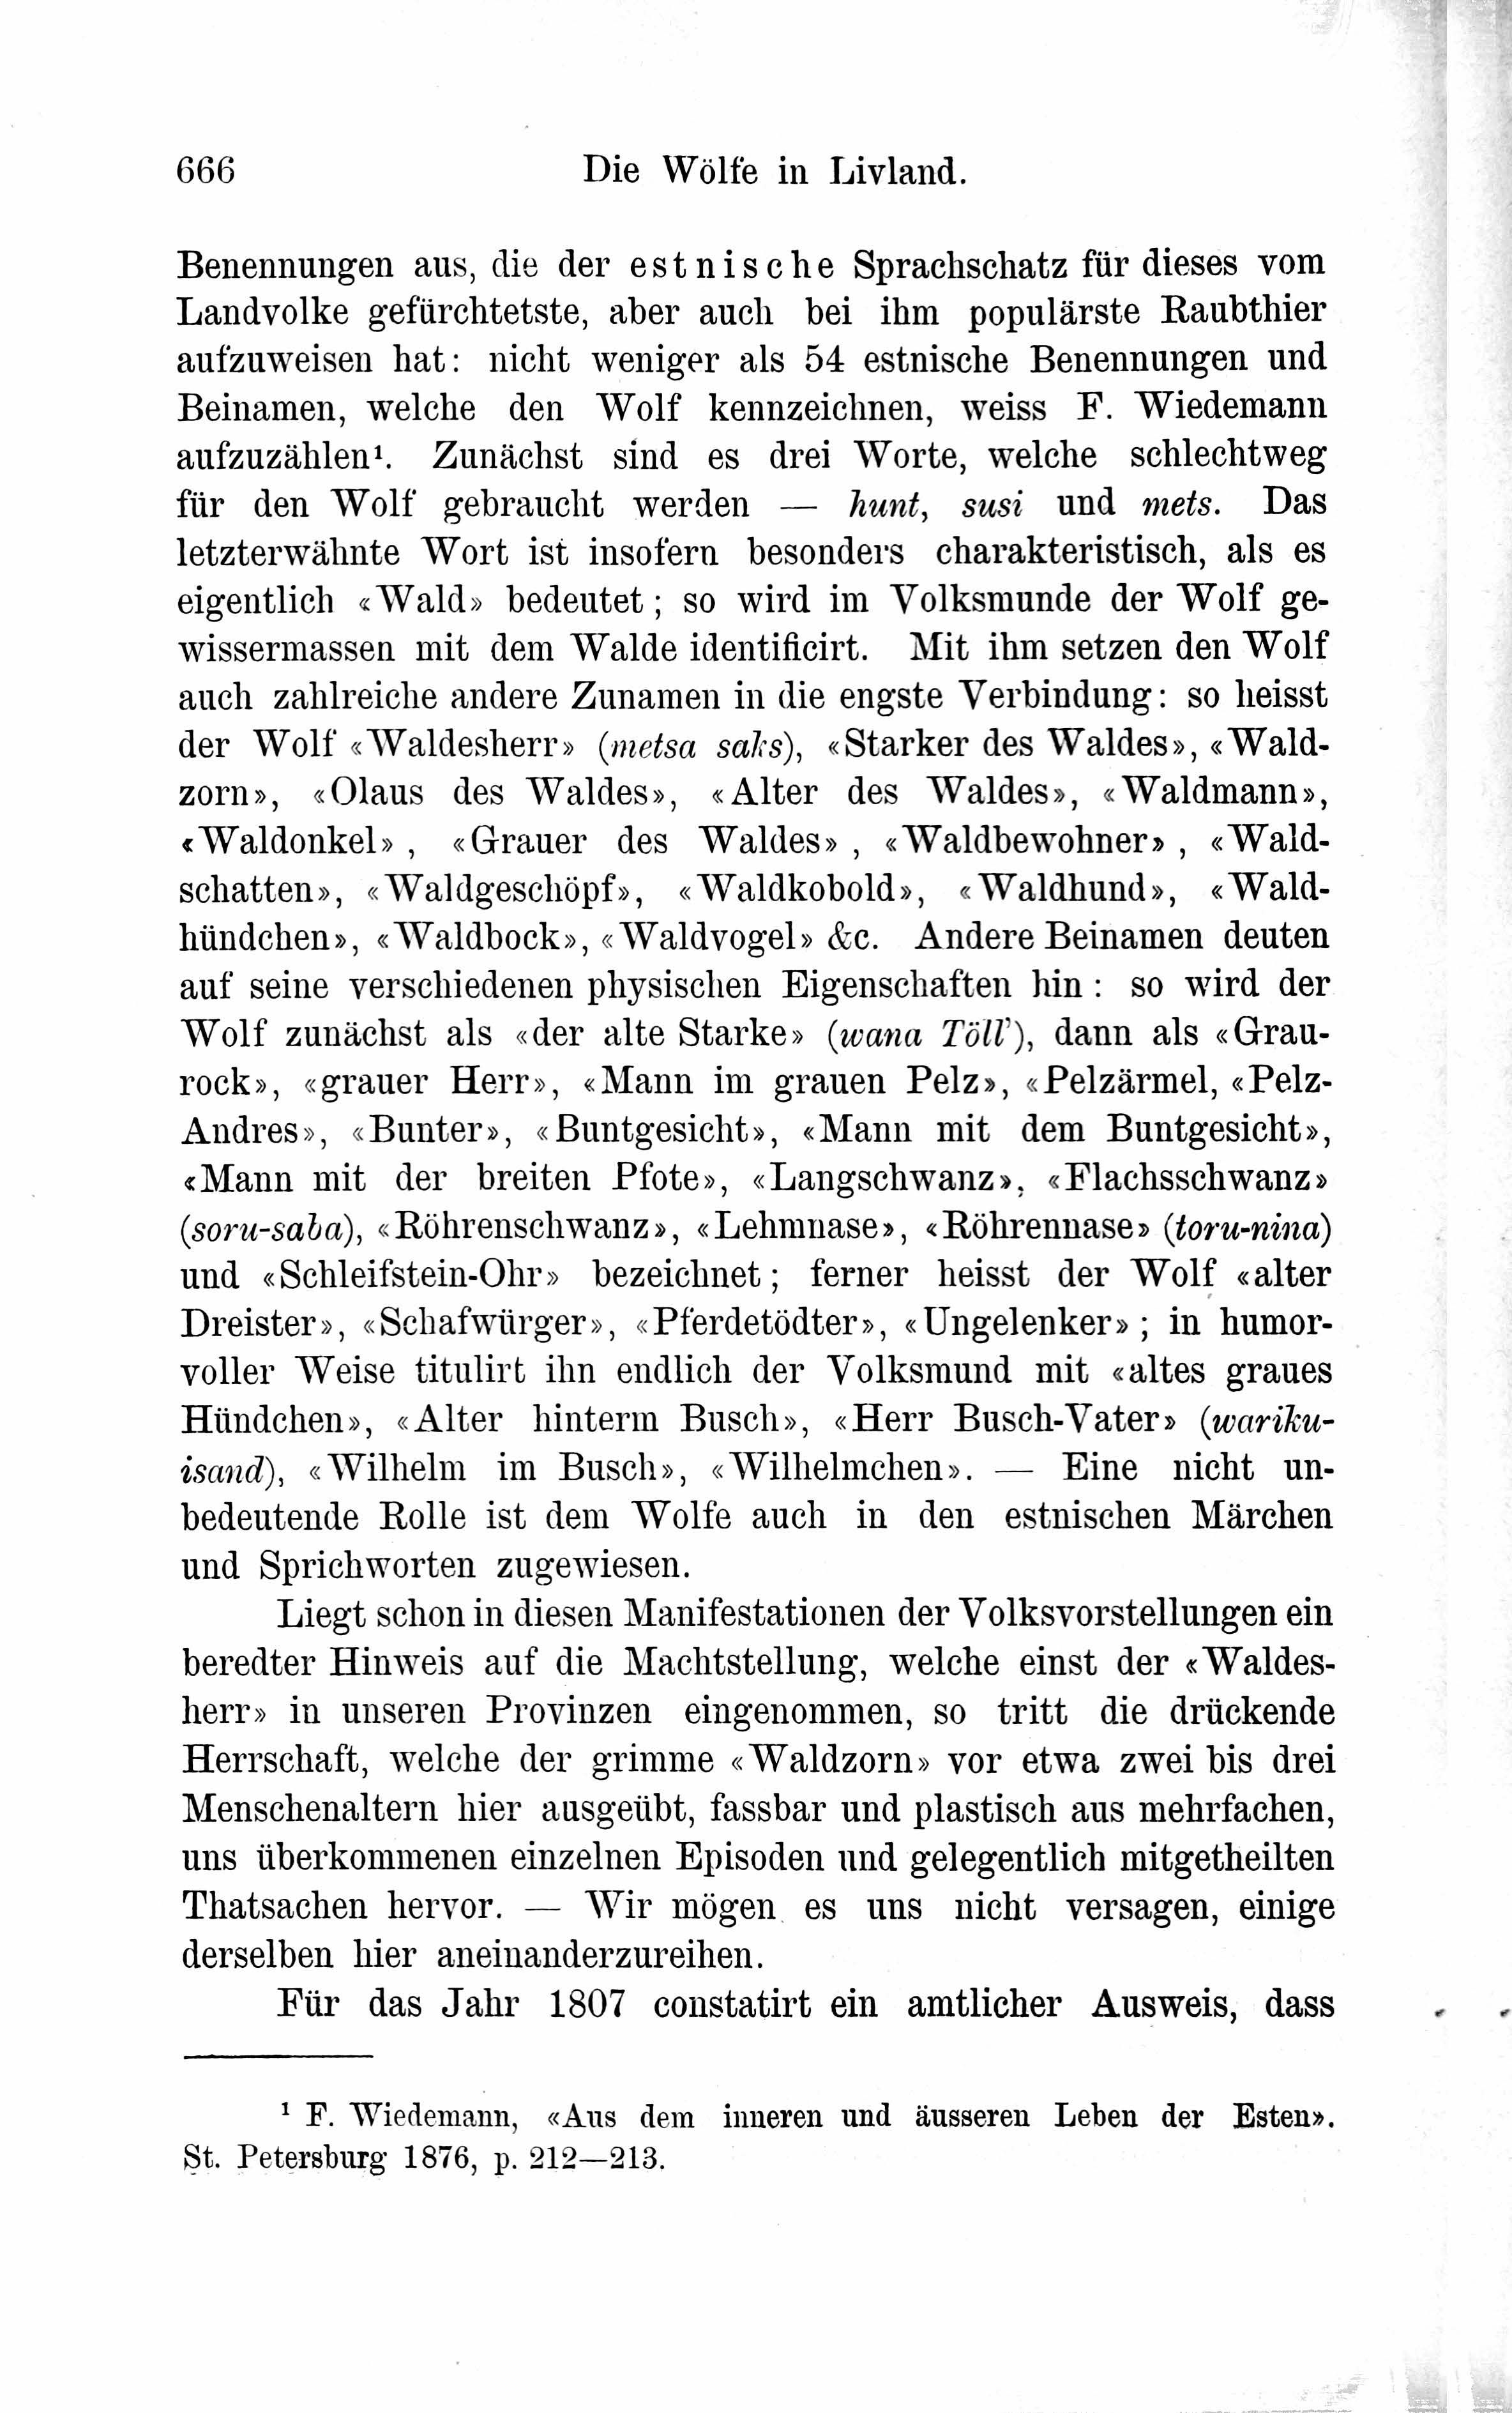 Die Wölfe in Livland (1882) | 8. Haupttext